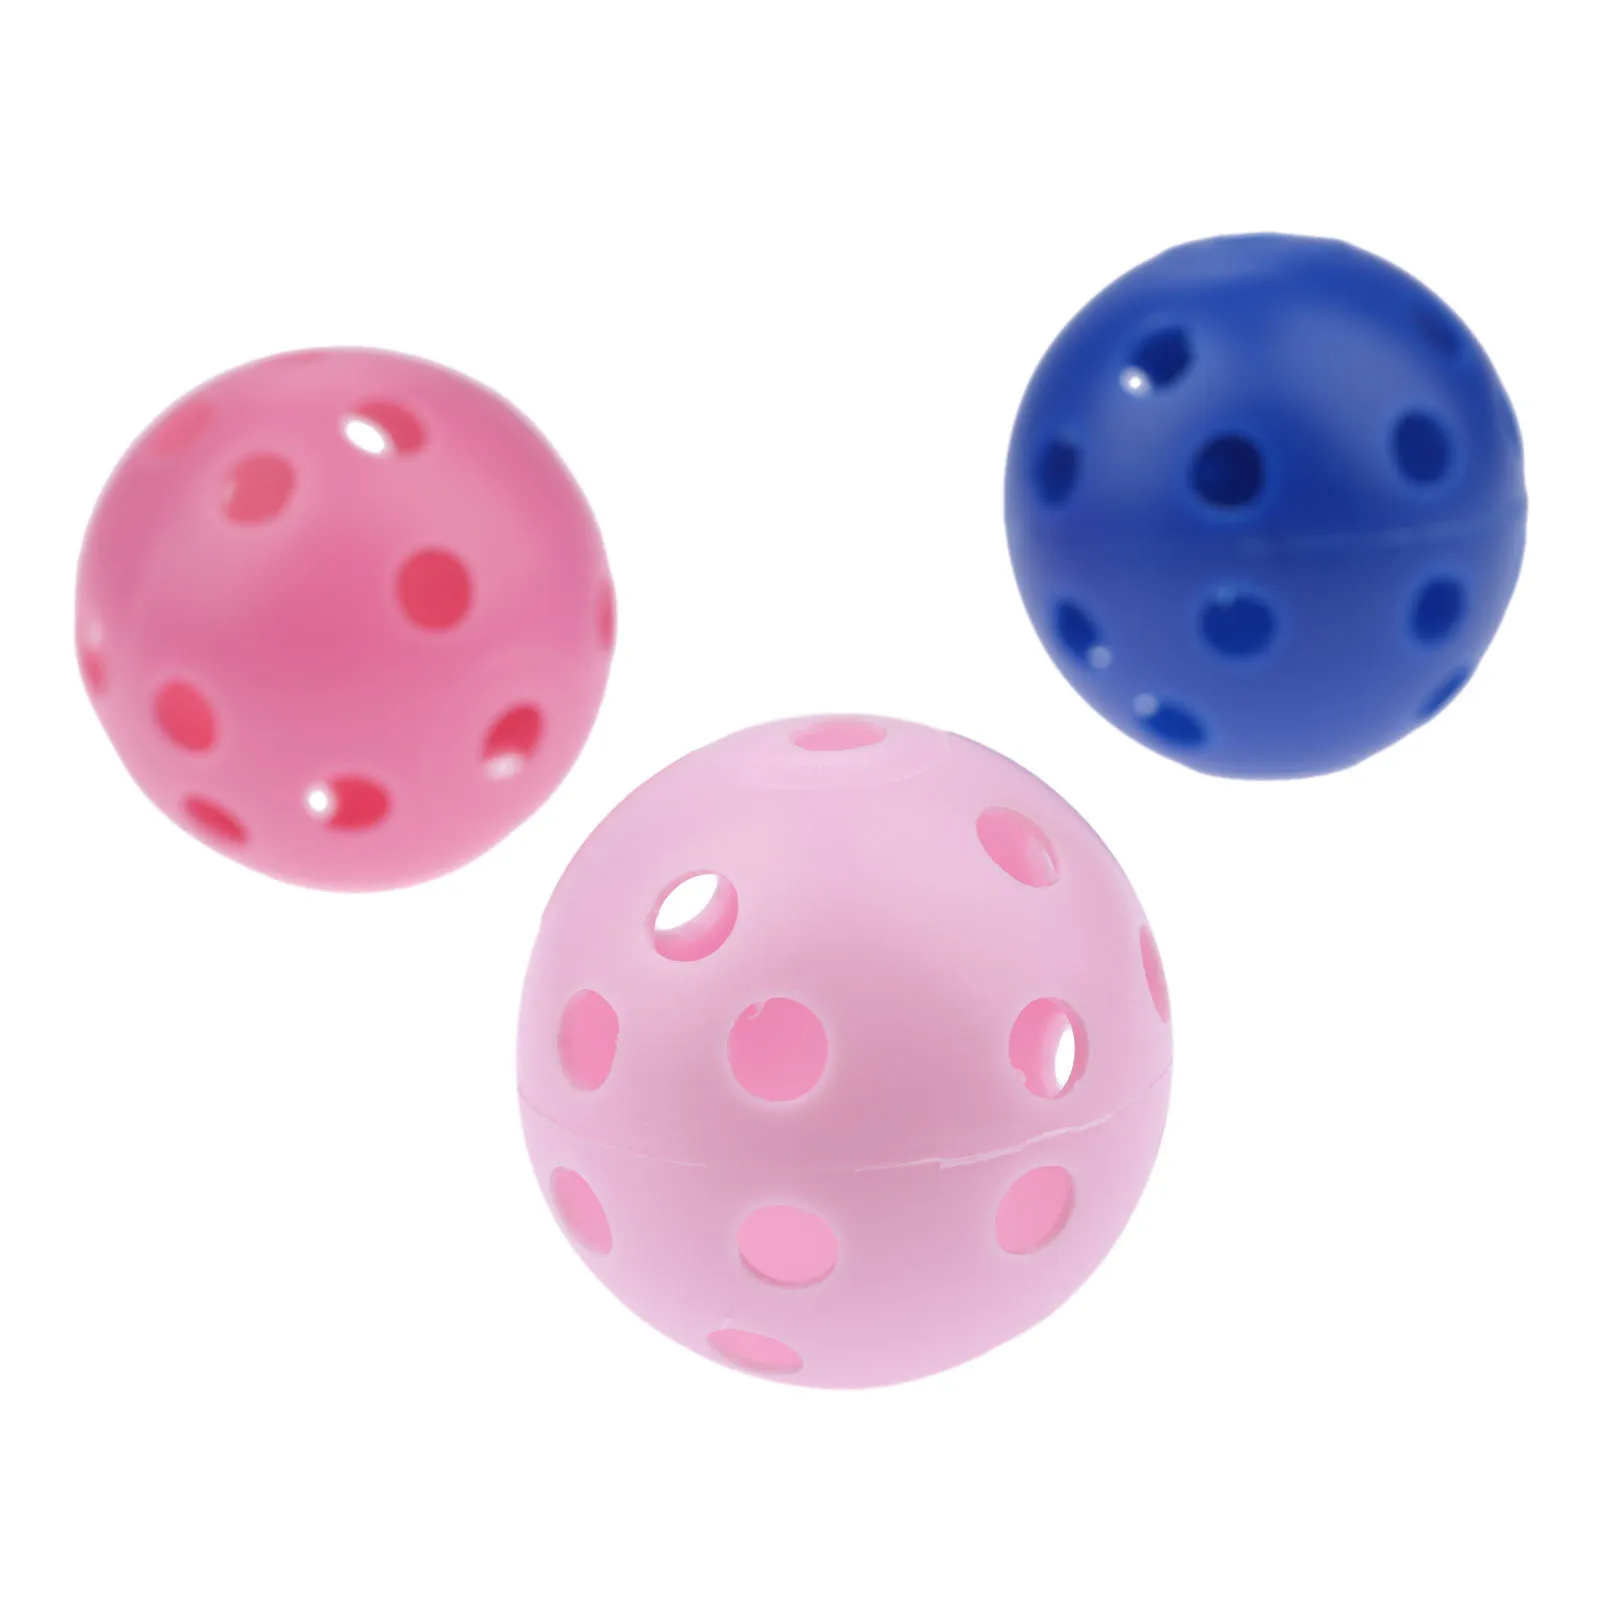 SURIEEN, 50 шт., 8 цветов, Пластиковые Мячи для гольфа, 41 мм, воздушные шары, полые с отверстиями, мячи для тренировок в гольф, для спорта на открытом воздухе, мячи для тренировок в гольф